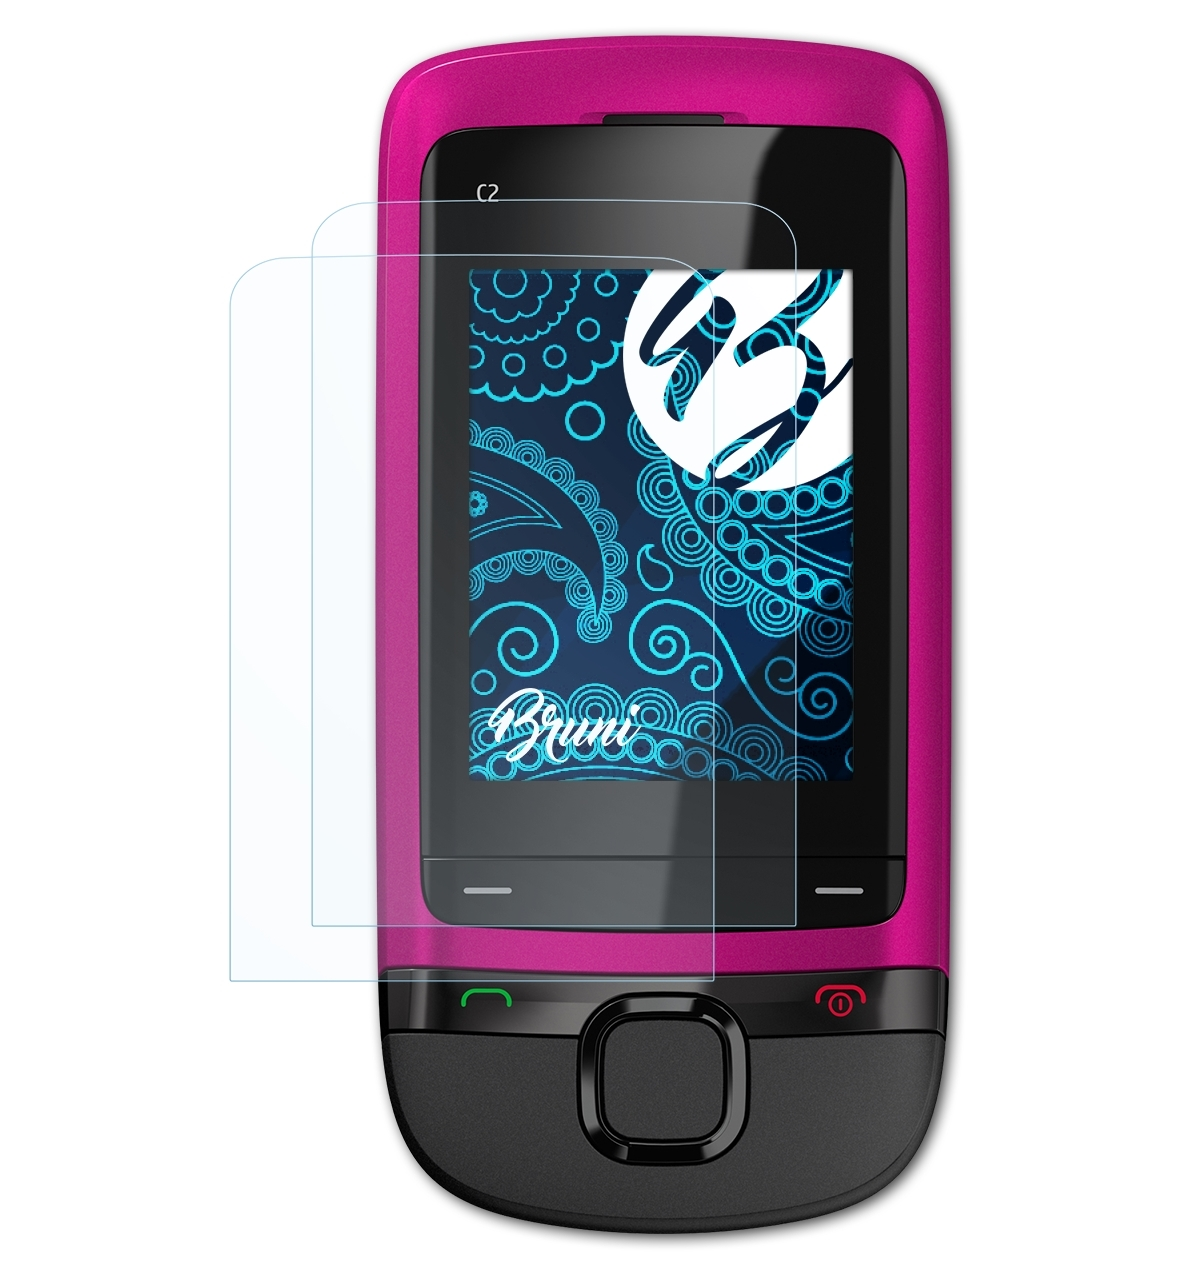 BRUNI 2x Basics-Clear Schutzfolie(für C2-05) Nokia